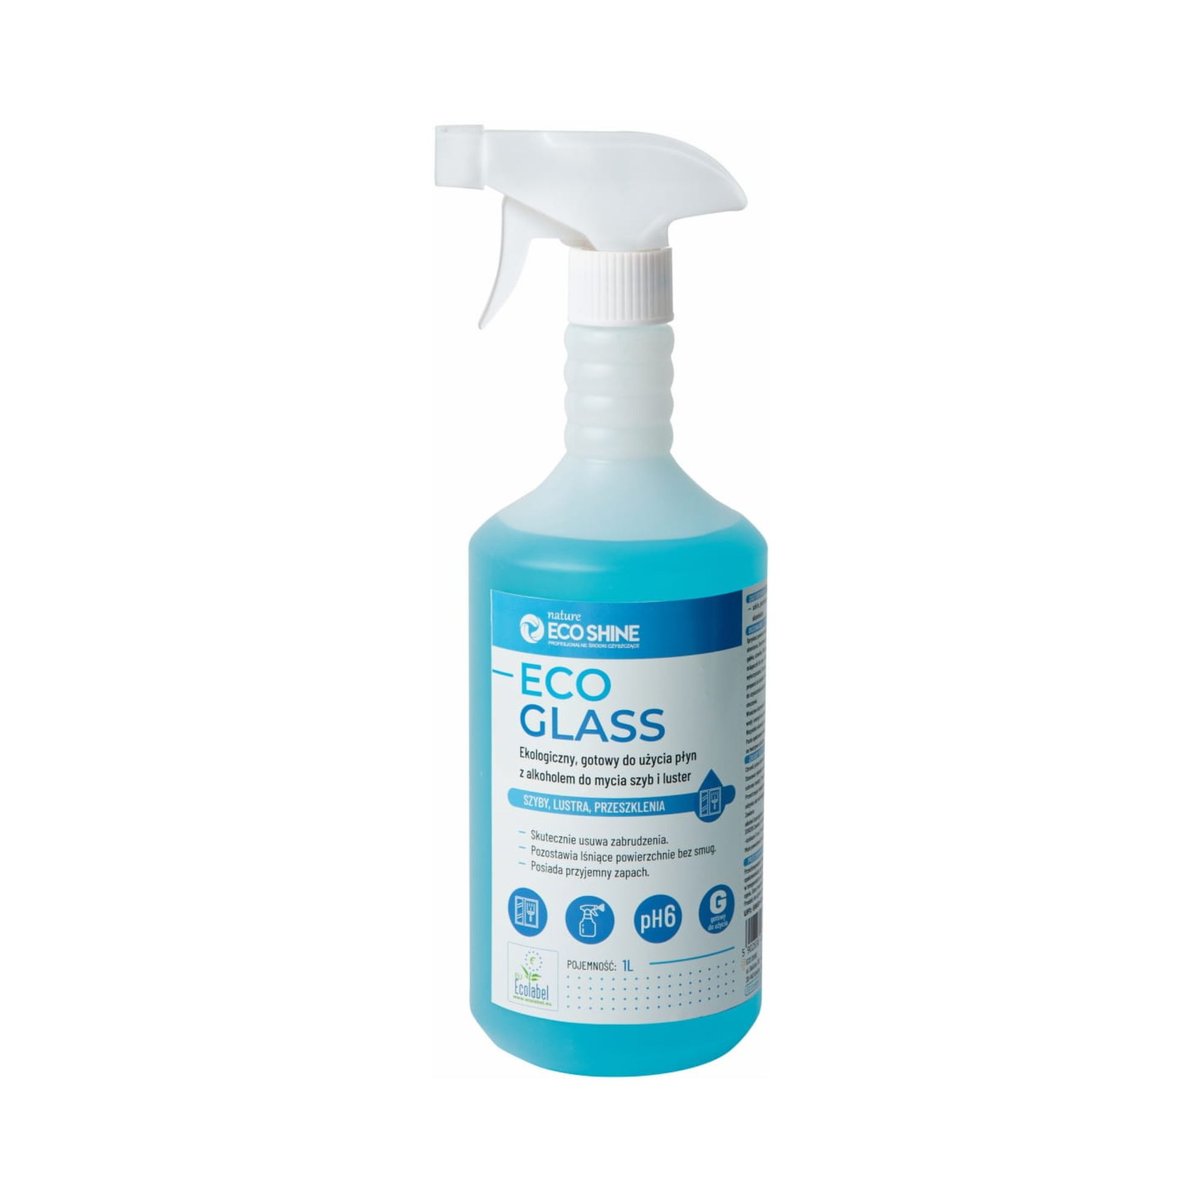 ECO SHINE Eco Glass płyn do mycia szyb i luster 1L